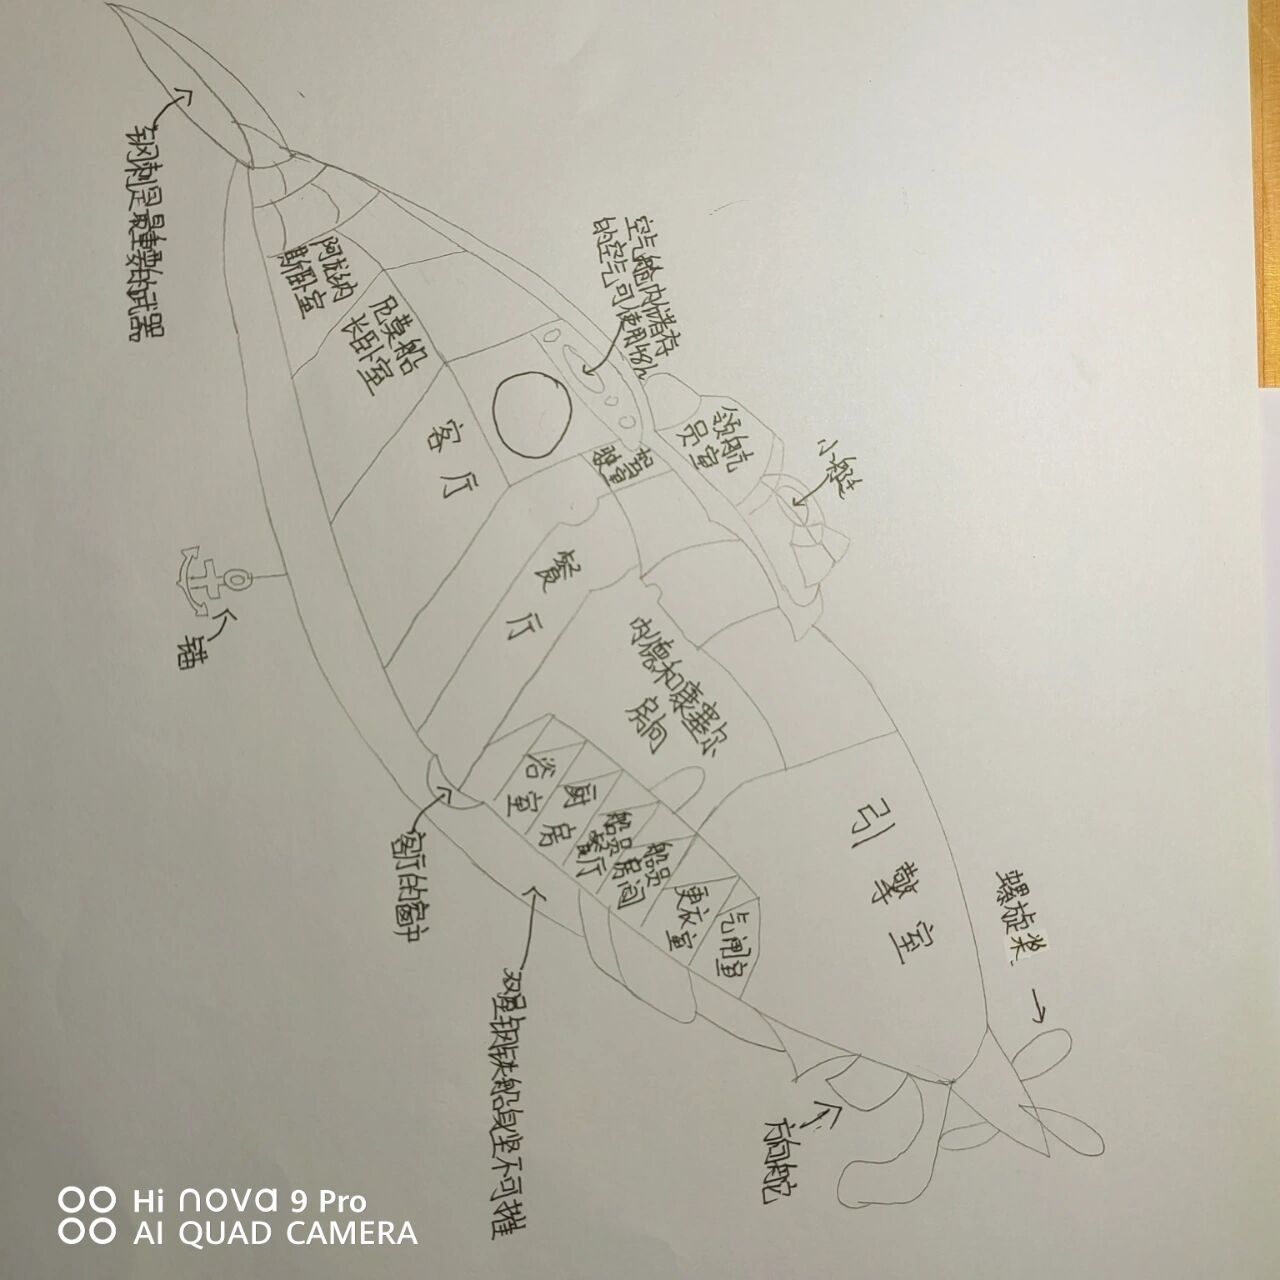 鹦鹉螺号示意图 结构图片